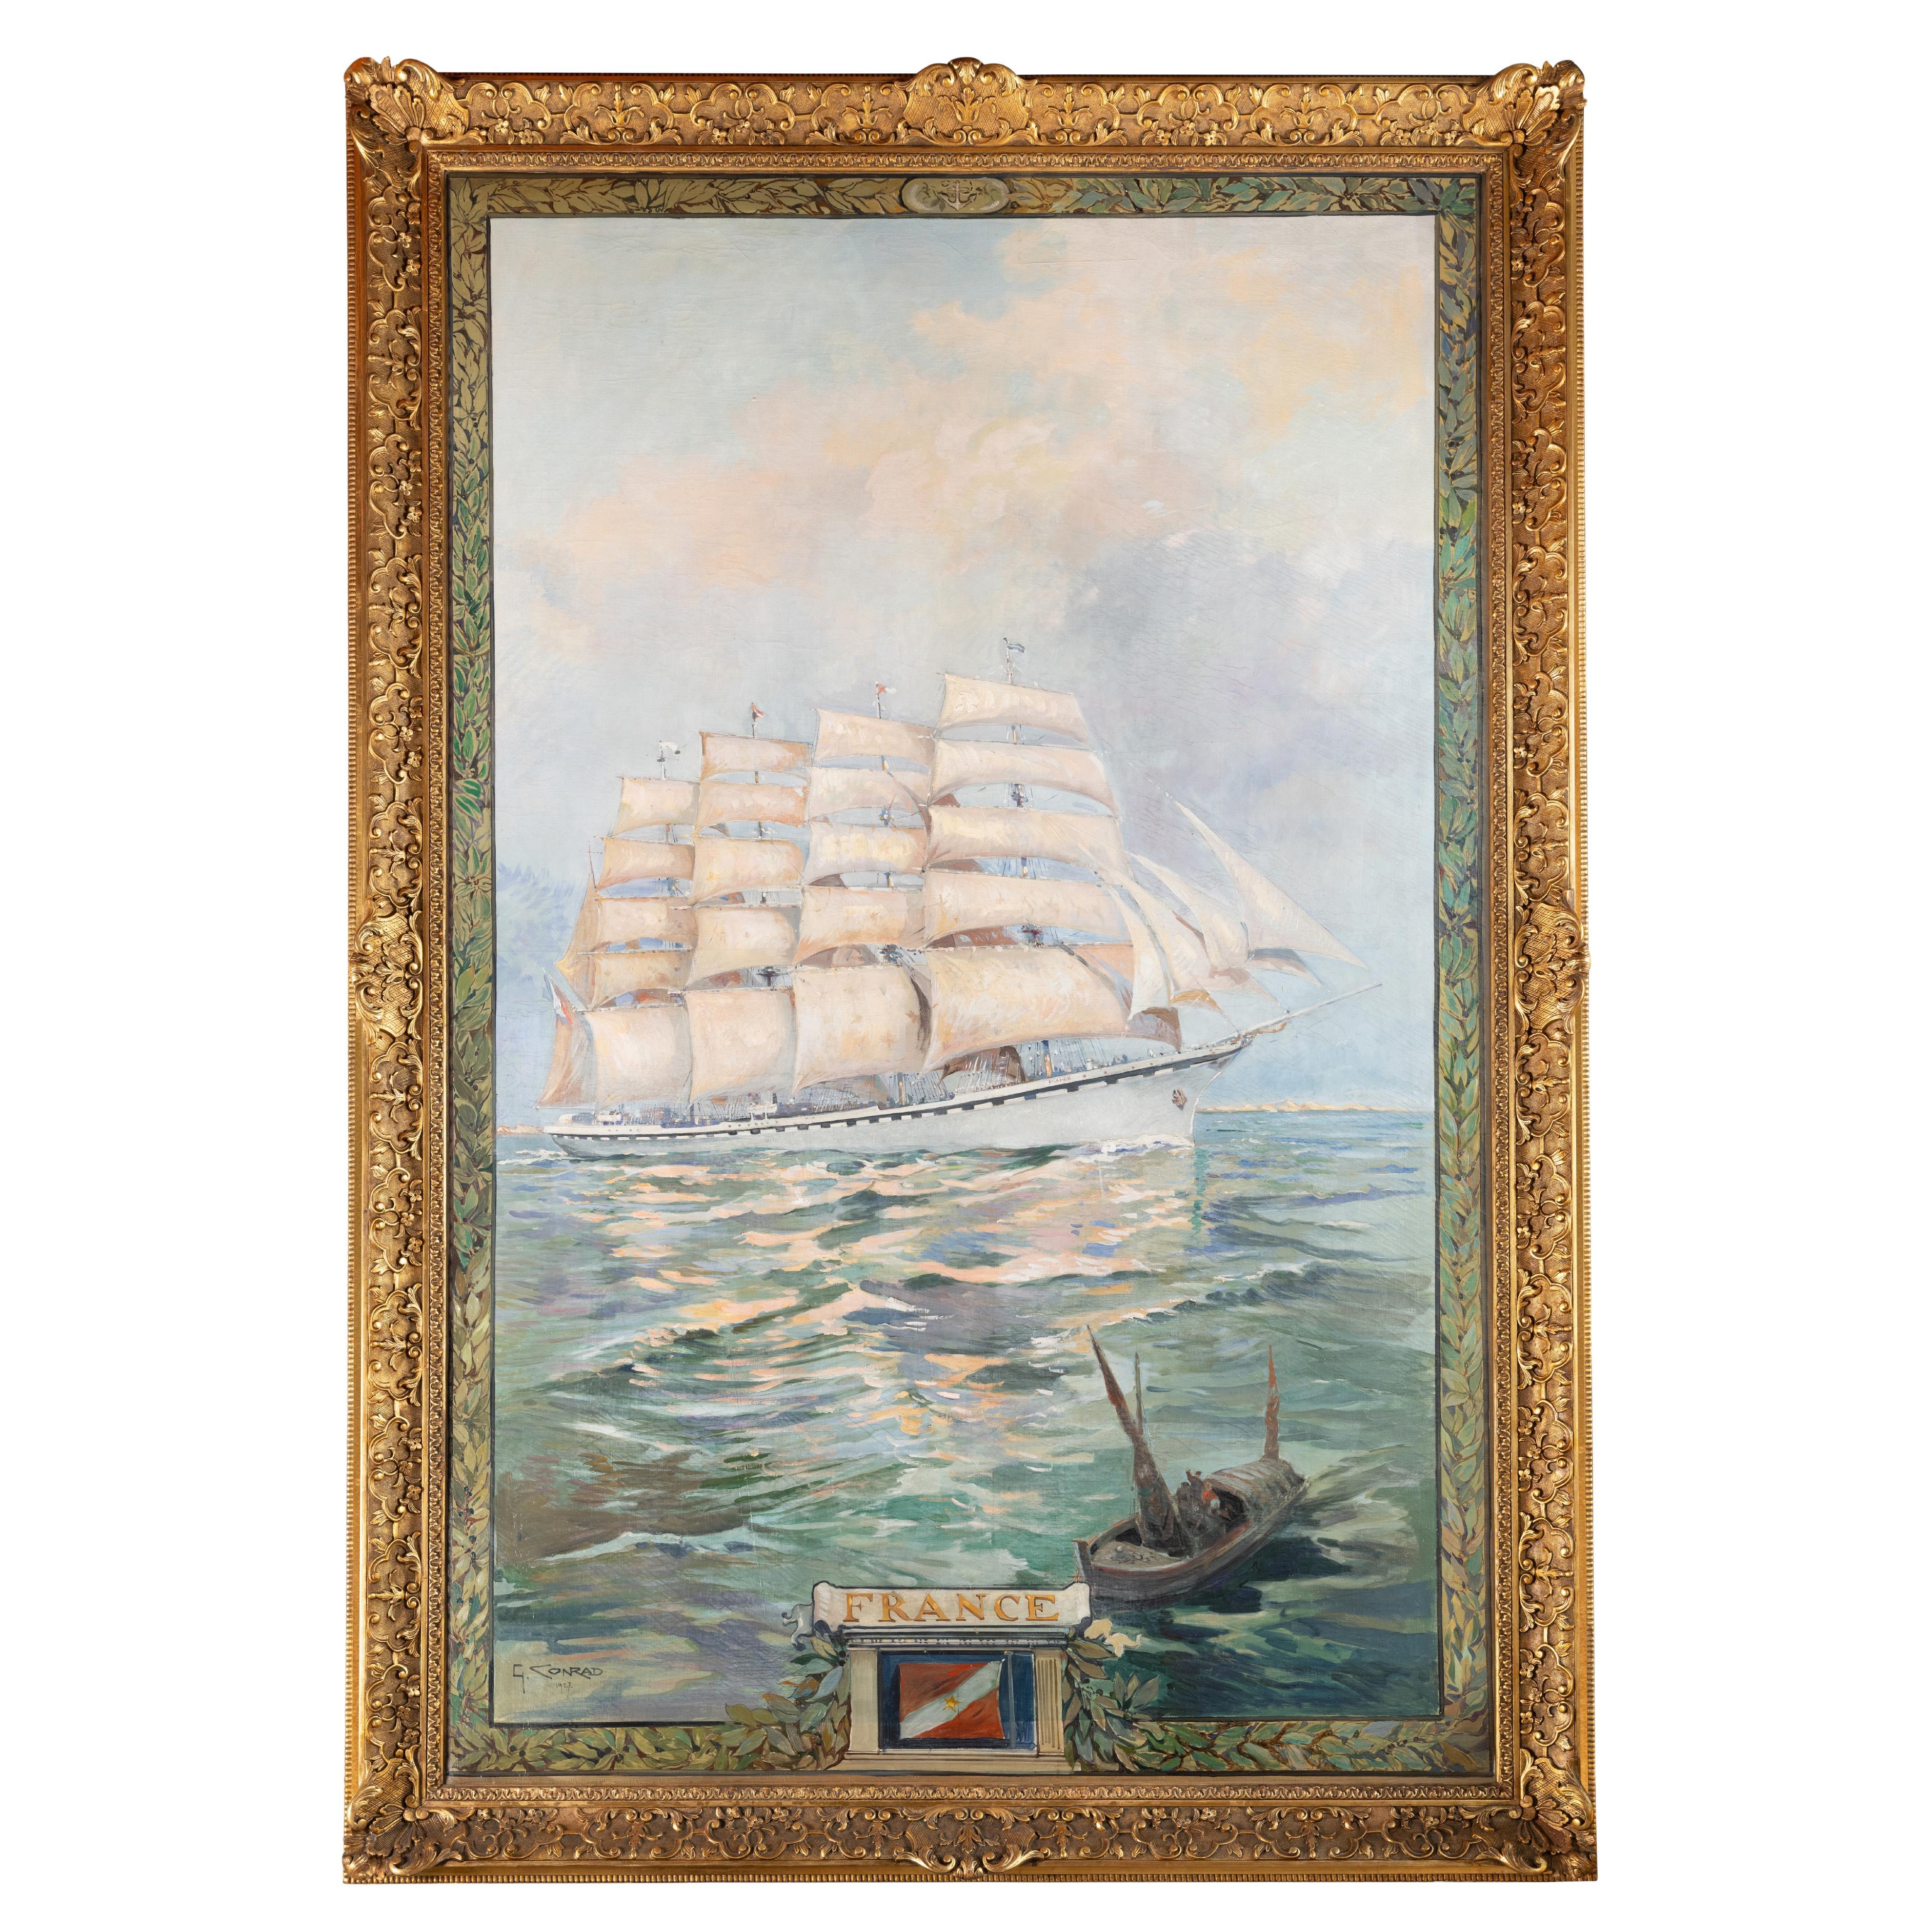 Conrad, huile sur toile monumentale, France, navire à voile à cinq mâts, marine, mer 1927